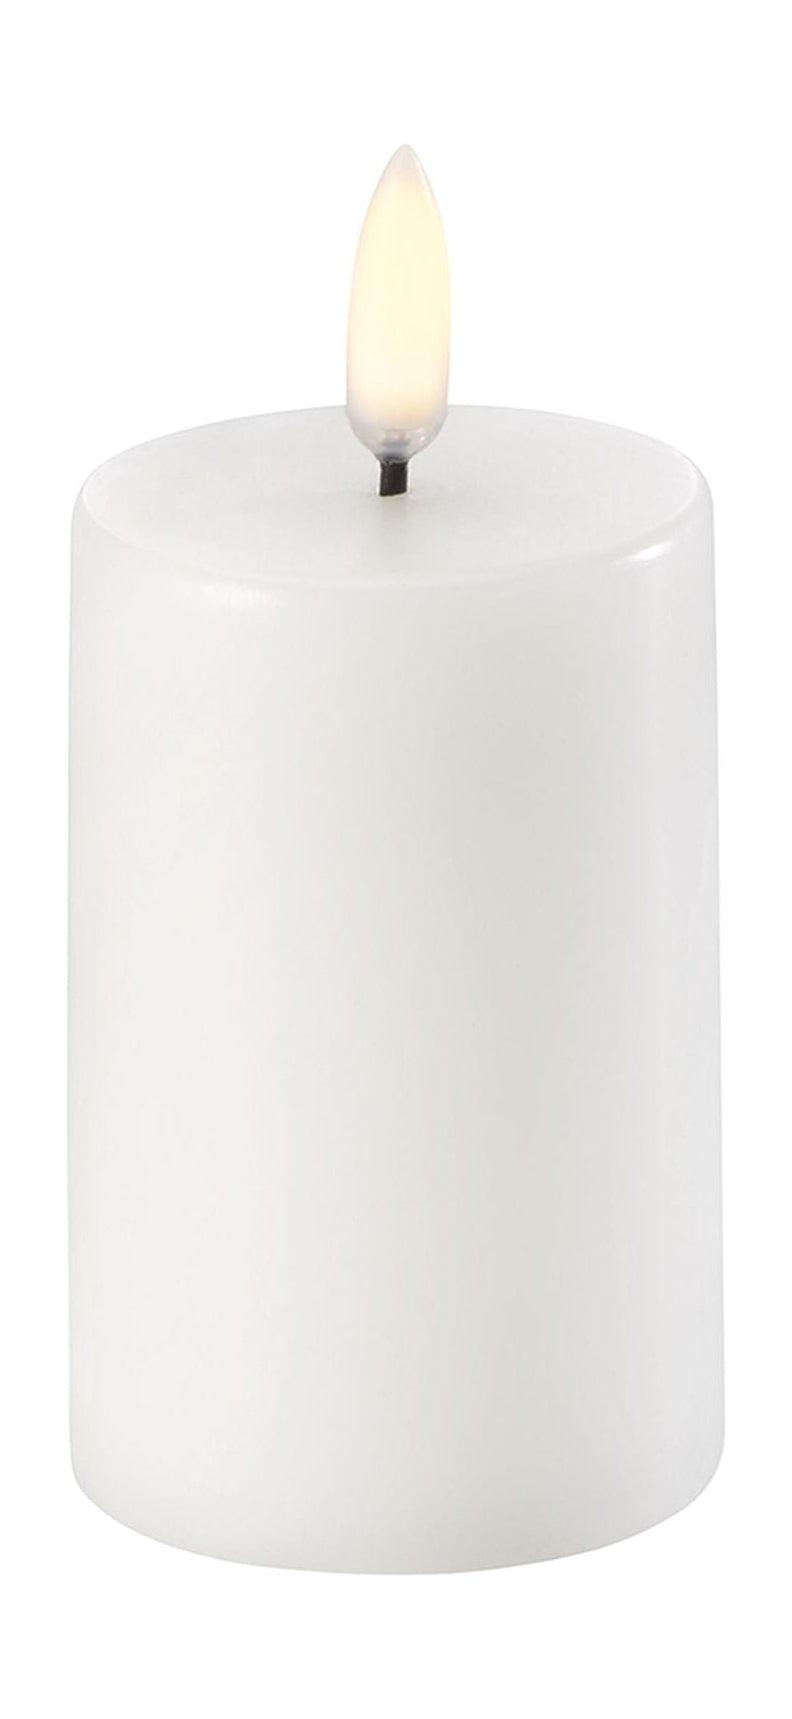 Pilar LED de iluminación de Uyuni Vela 3 D Flame Øx H 5x7,5 cm, Nordic White